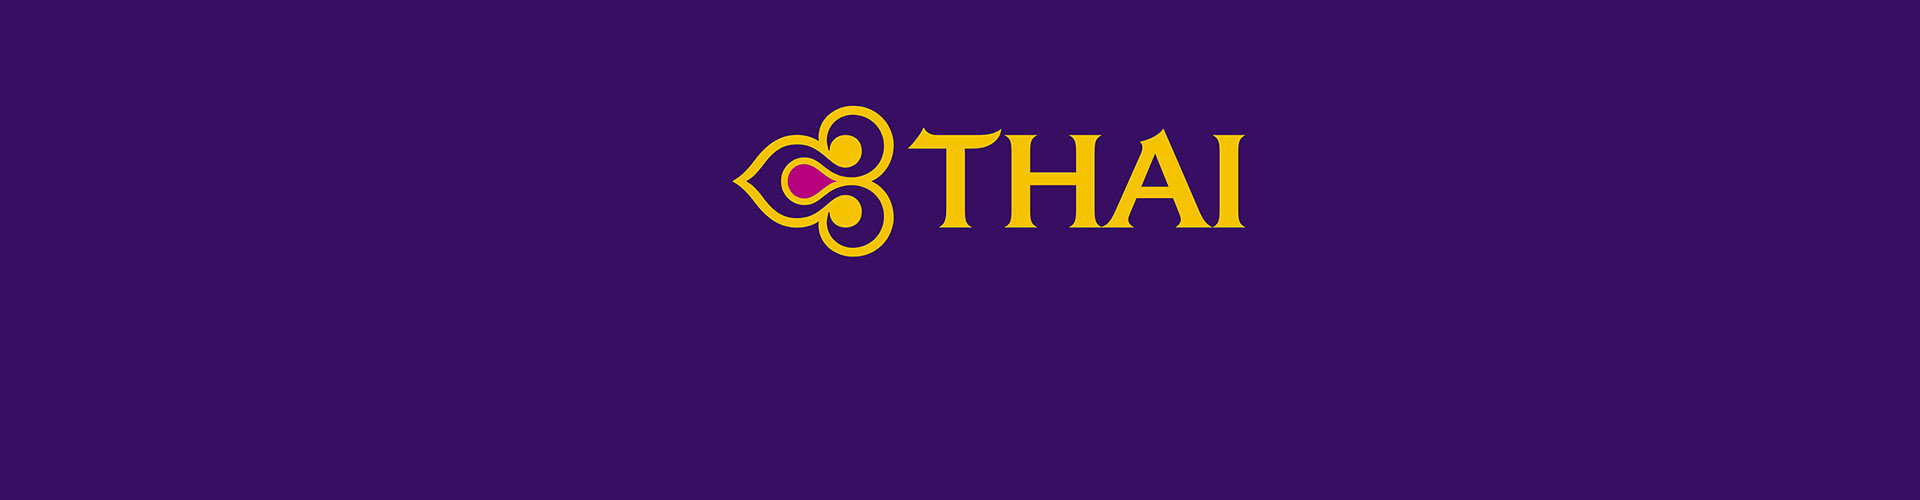 Thai Airways タイ国際航空画像2